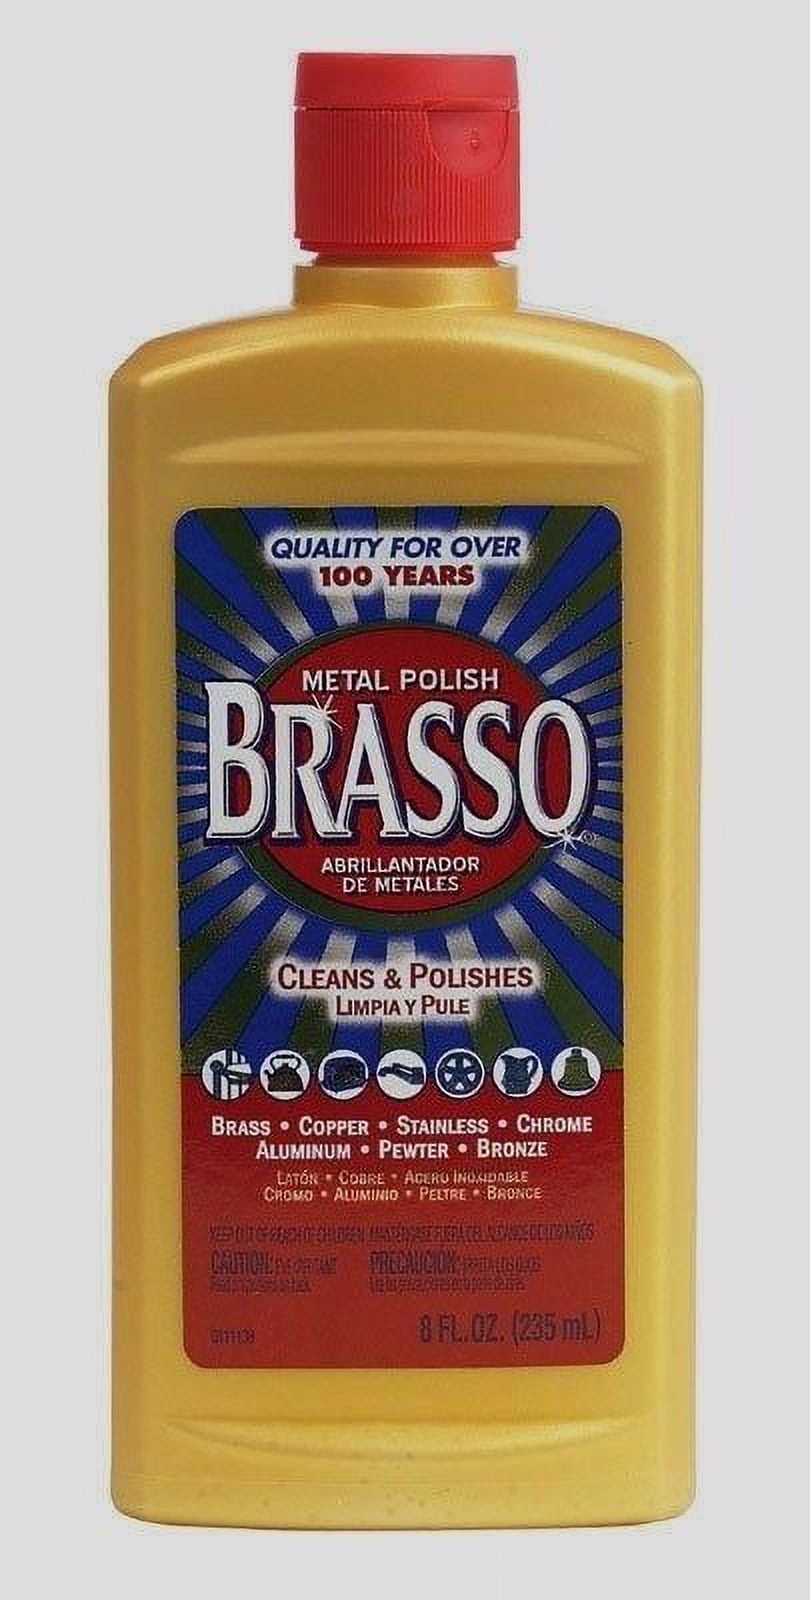  Brasso Metal Polish, 8 Oz Bottle for Brass, Copper, Stainless,  Chrome, Aluminum, Pewter & Bronze, 8 Oz (Pack of 2) : Health & Household